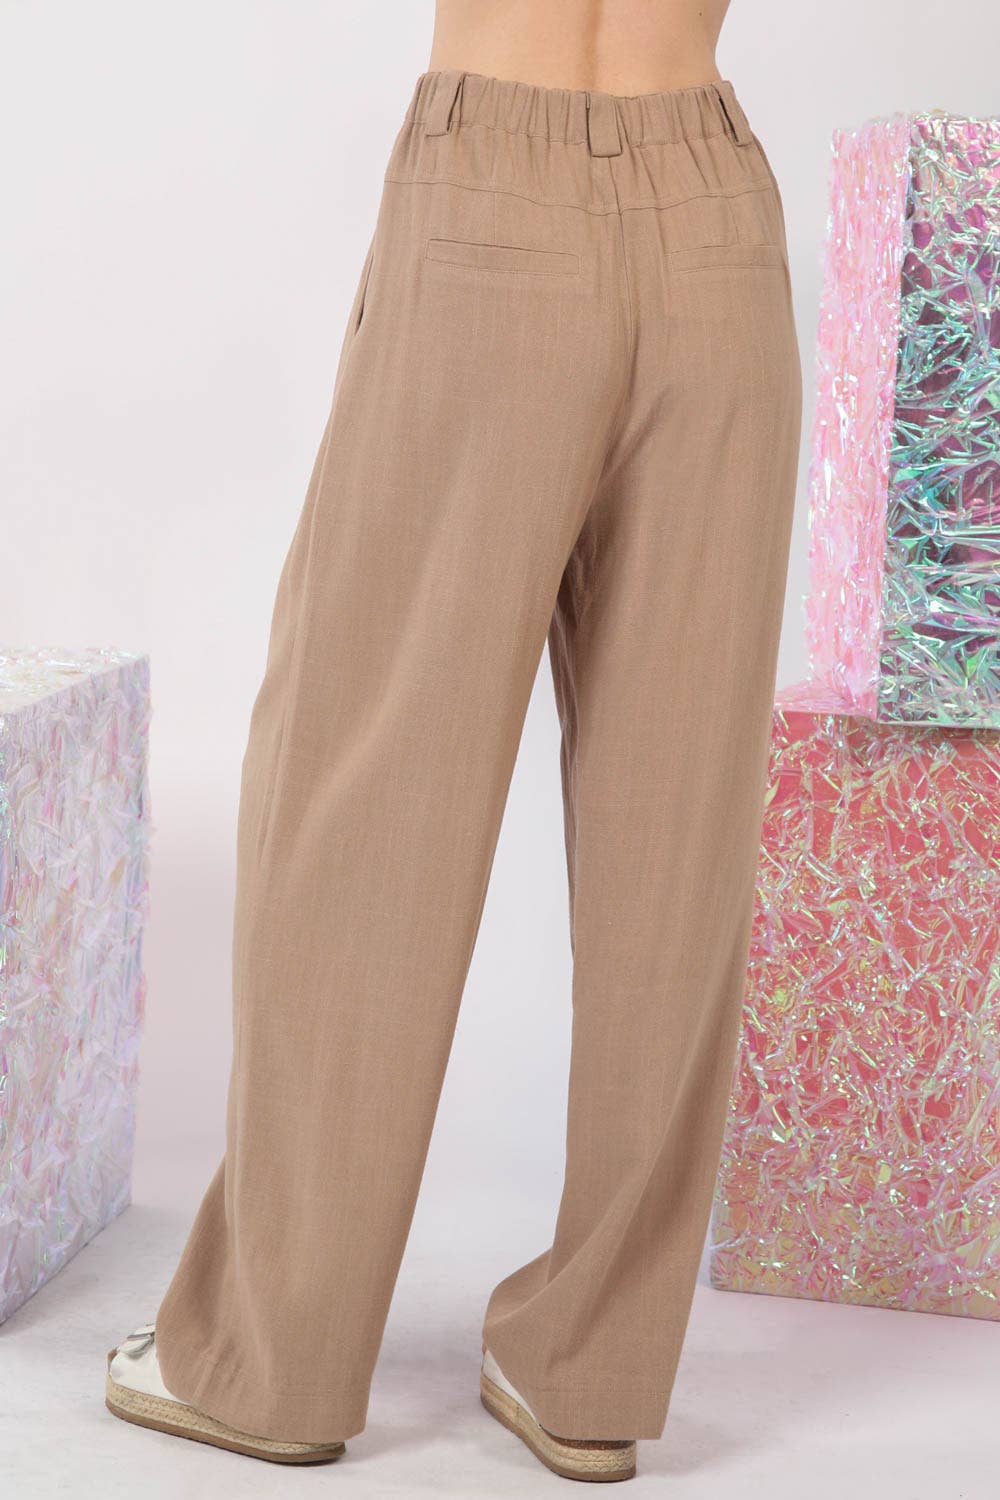 Solid Linen Pleated Wide Leg Comfy Pants-Curvy - Modish Maven Boutique